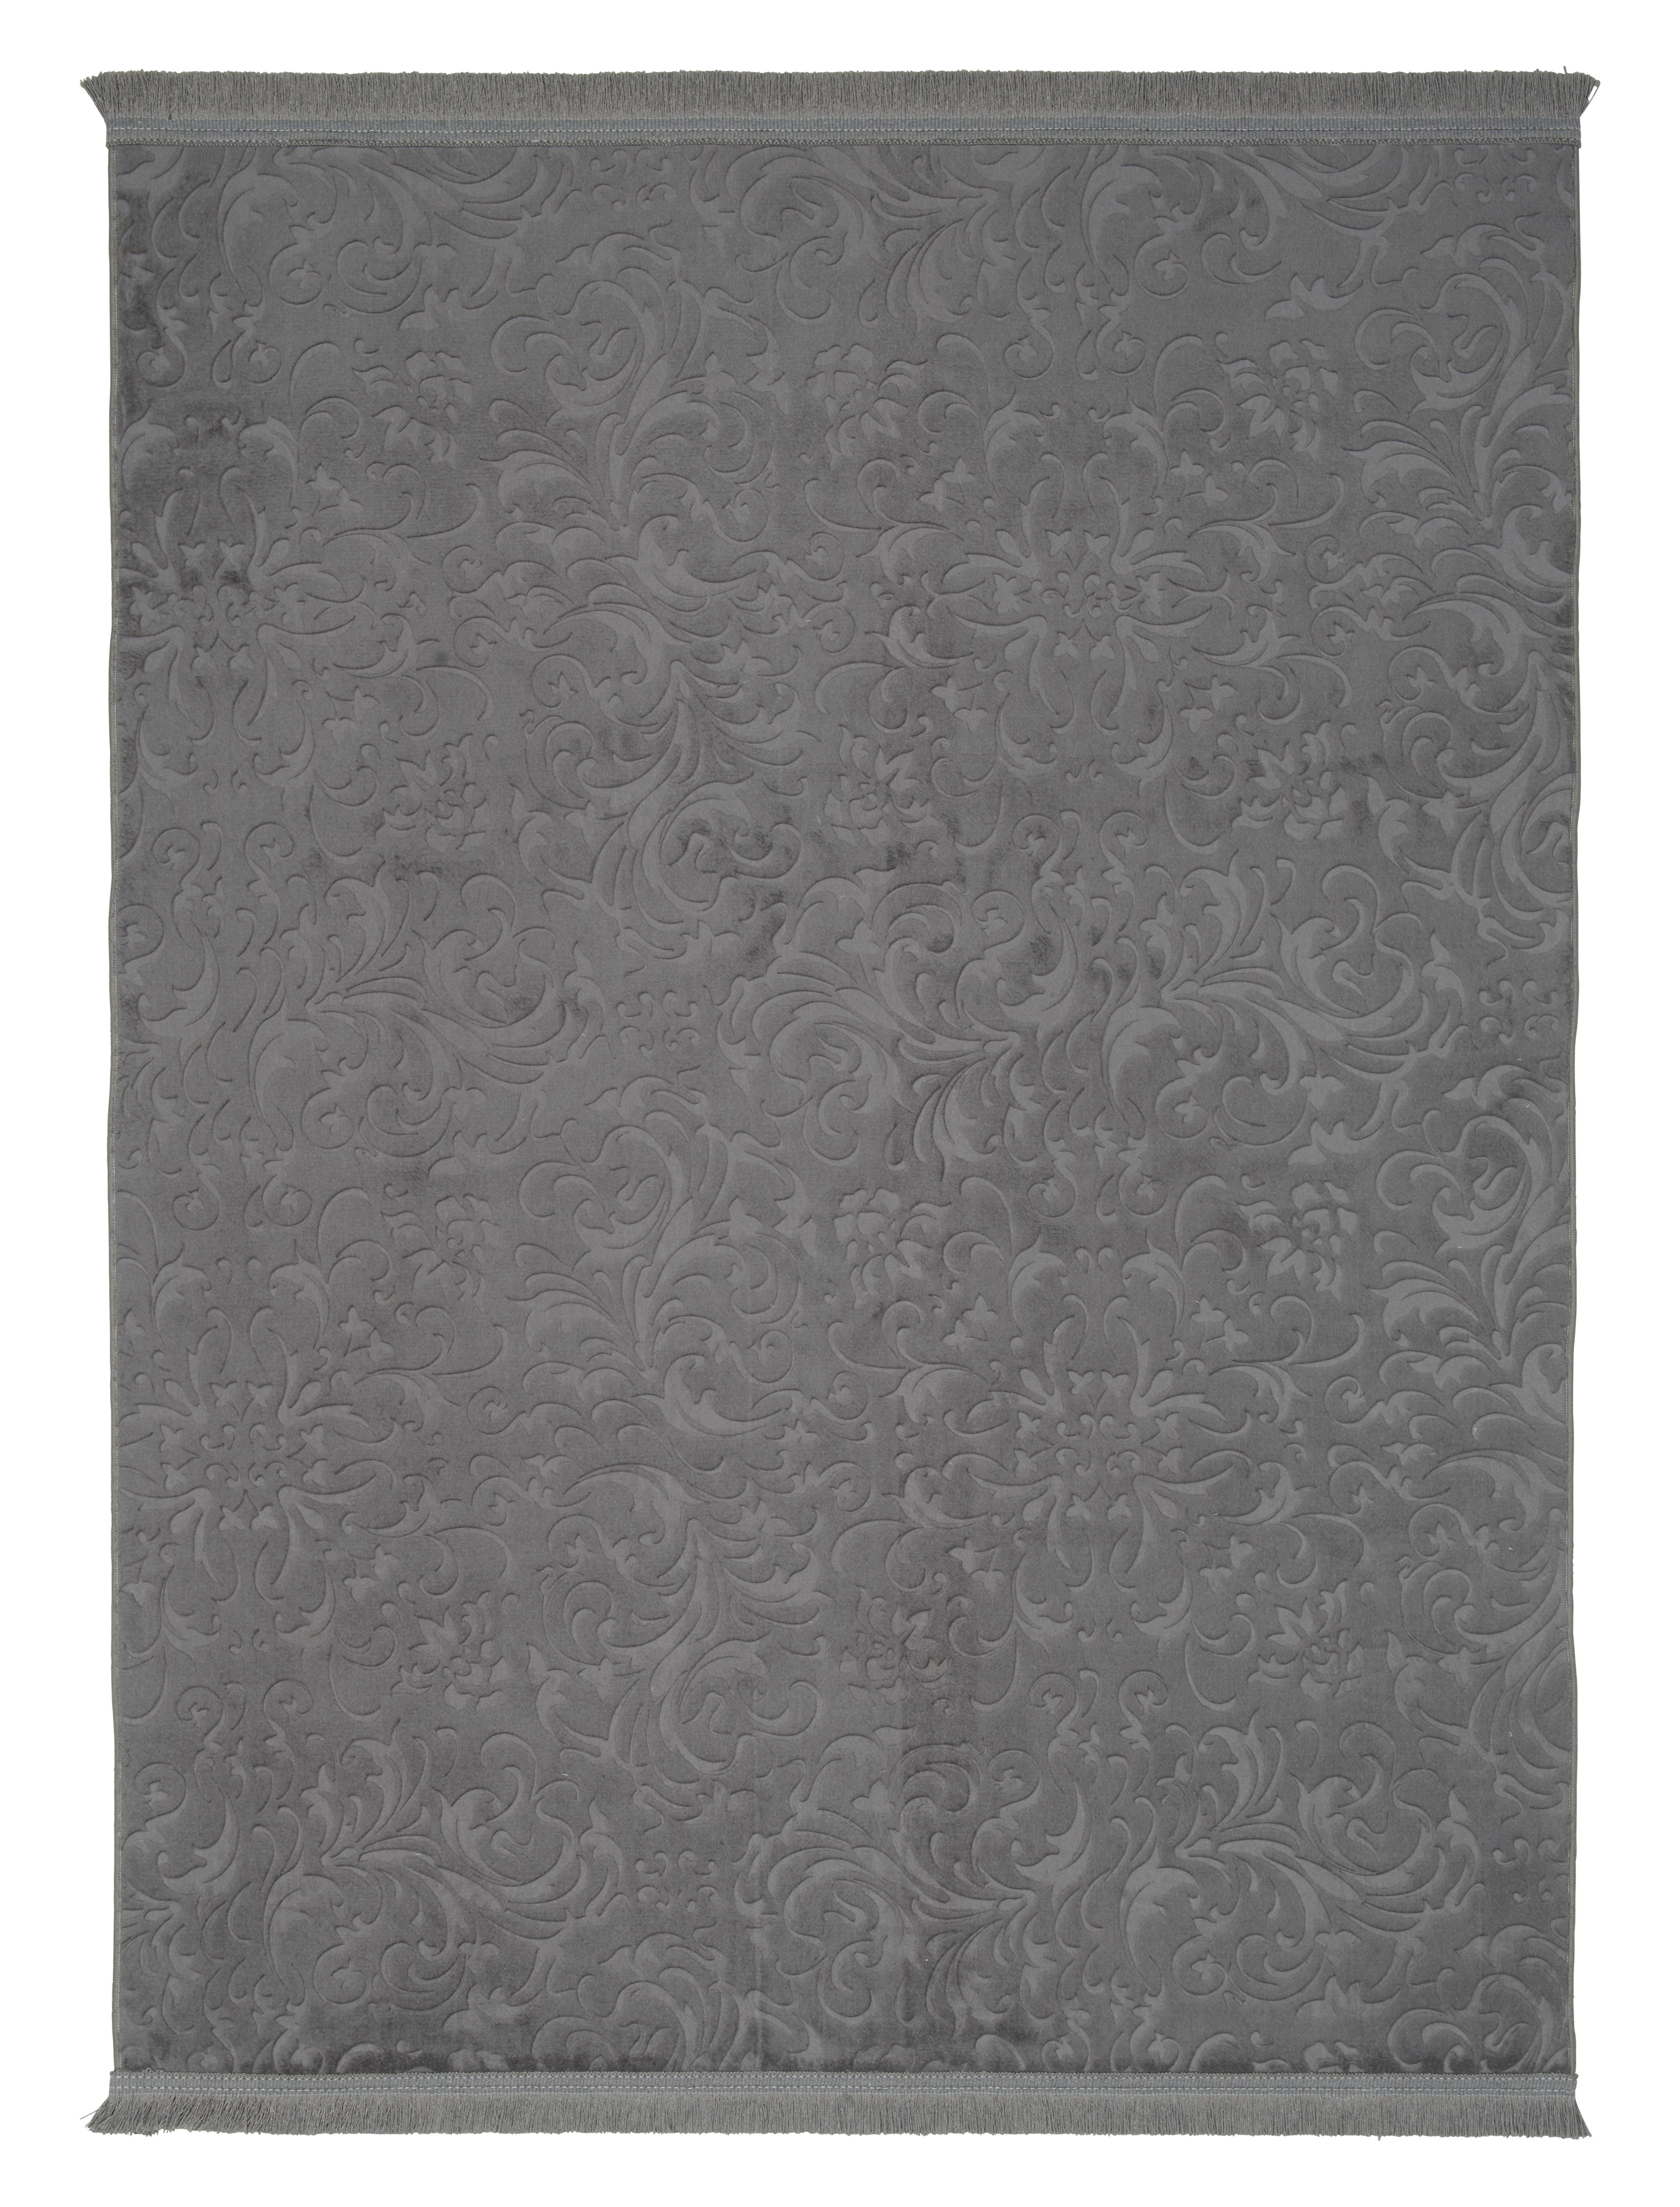 Tkaný Koberec Daphne 1, 80/140cm, Antracit - antracitová, Moderní, textil (80cm) - Modern Living